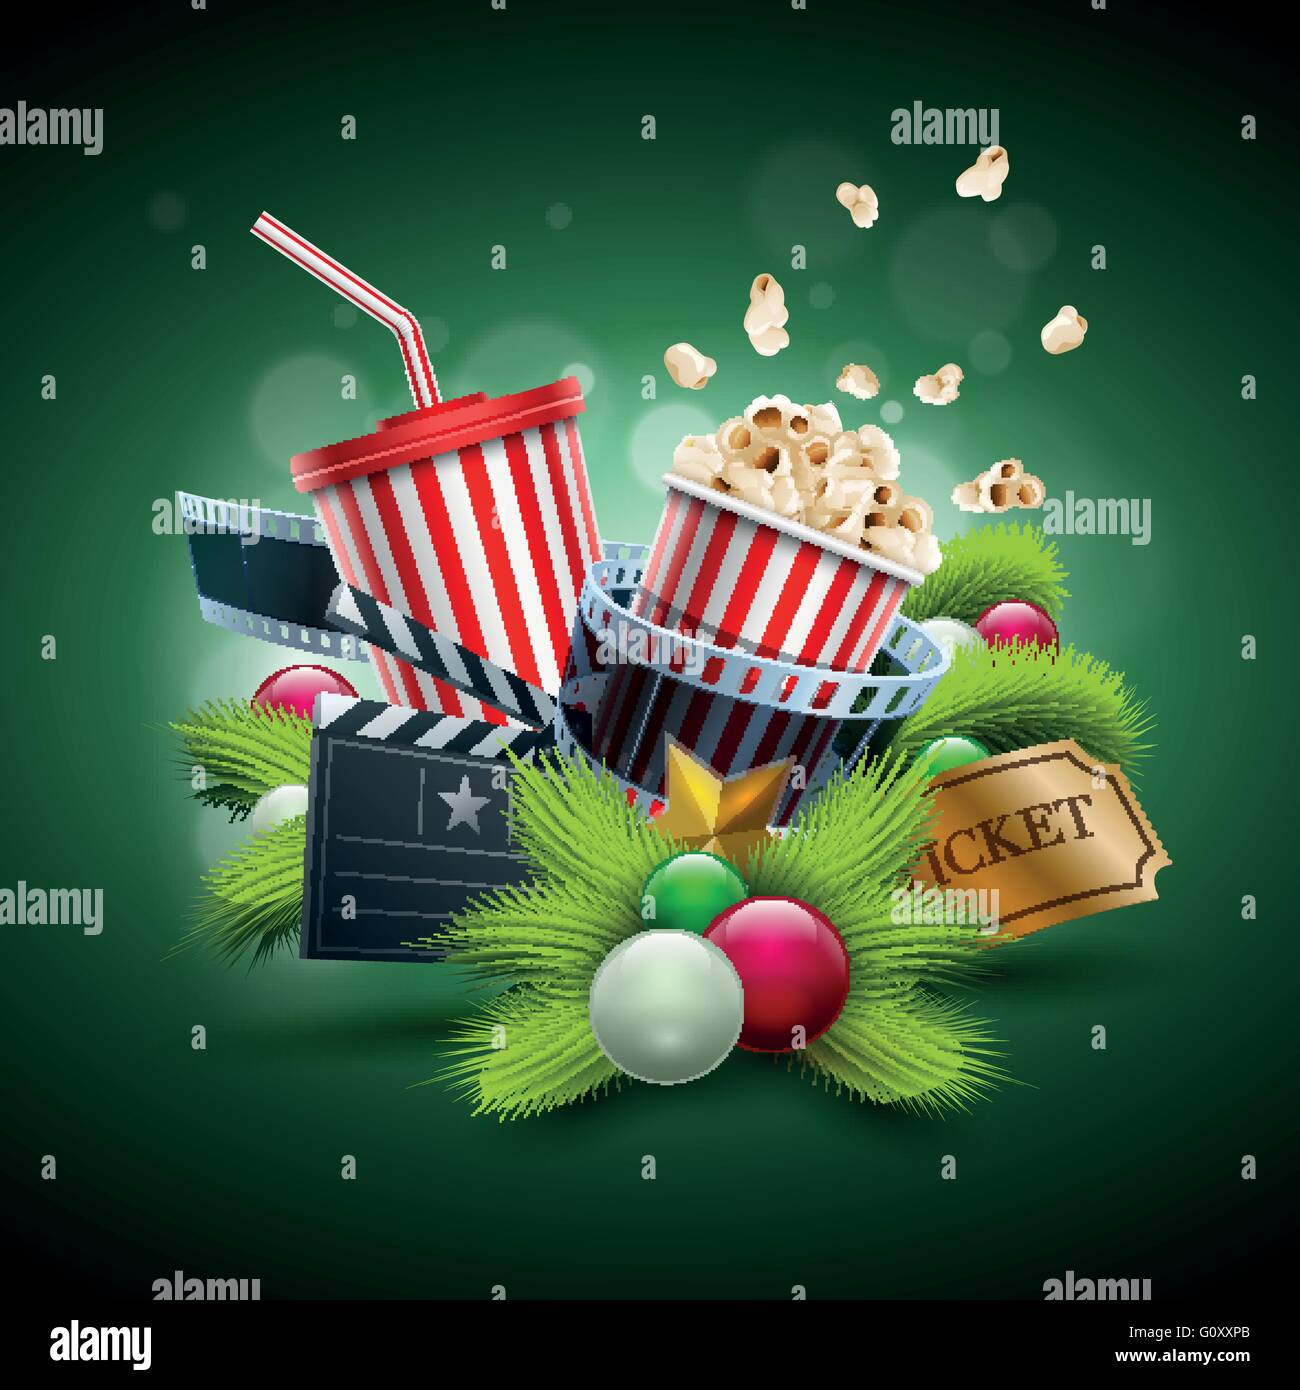 Weihnachtsschmuck, Popcorn-Box; Einweg-Scup für Getränke mit Strohhalm, Filmstreifen und Ticket. Detaillierte Vektor-Illustration. Stock Vektor